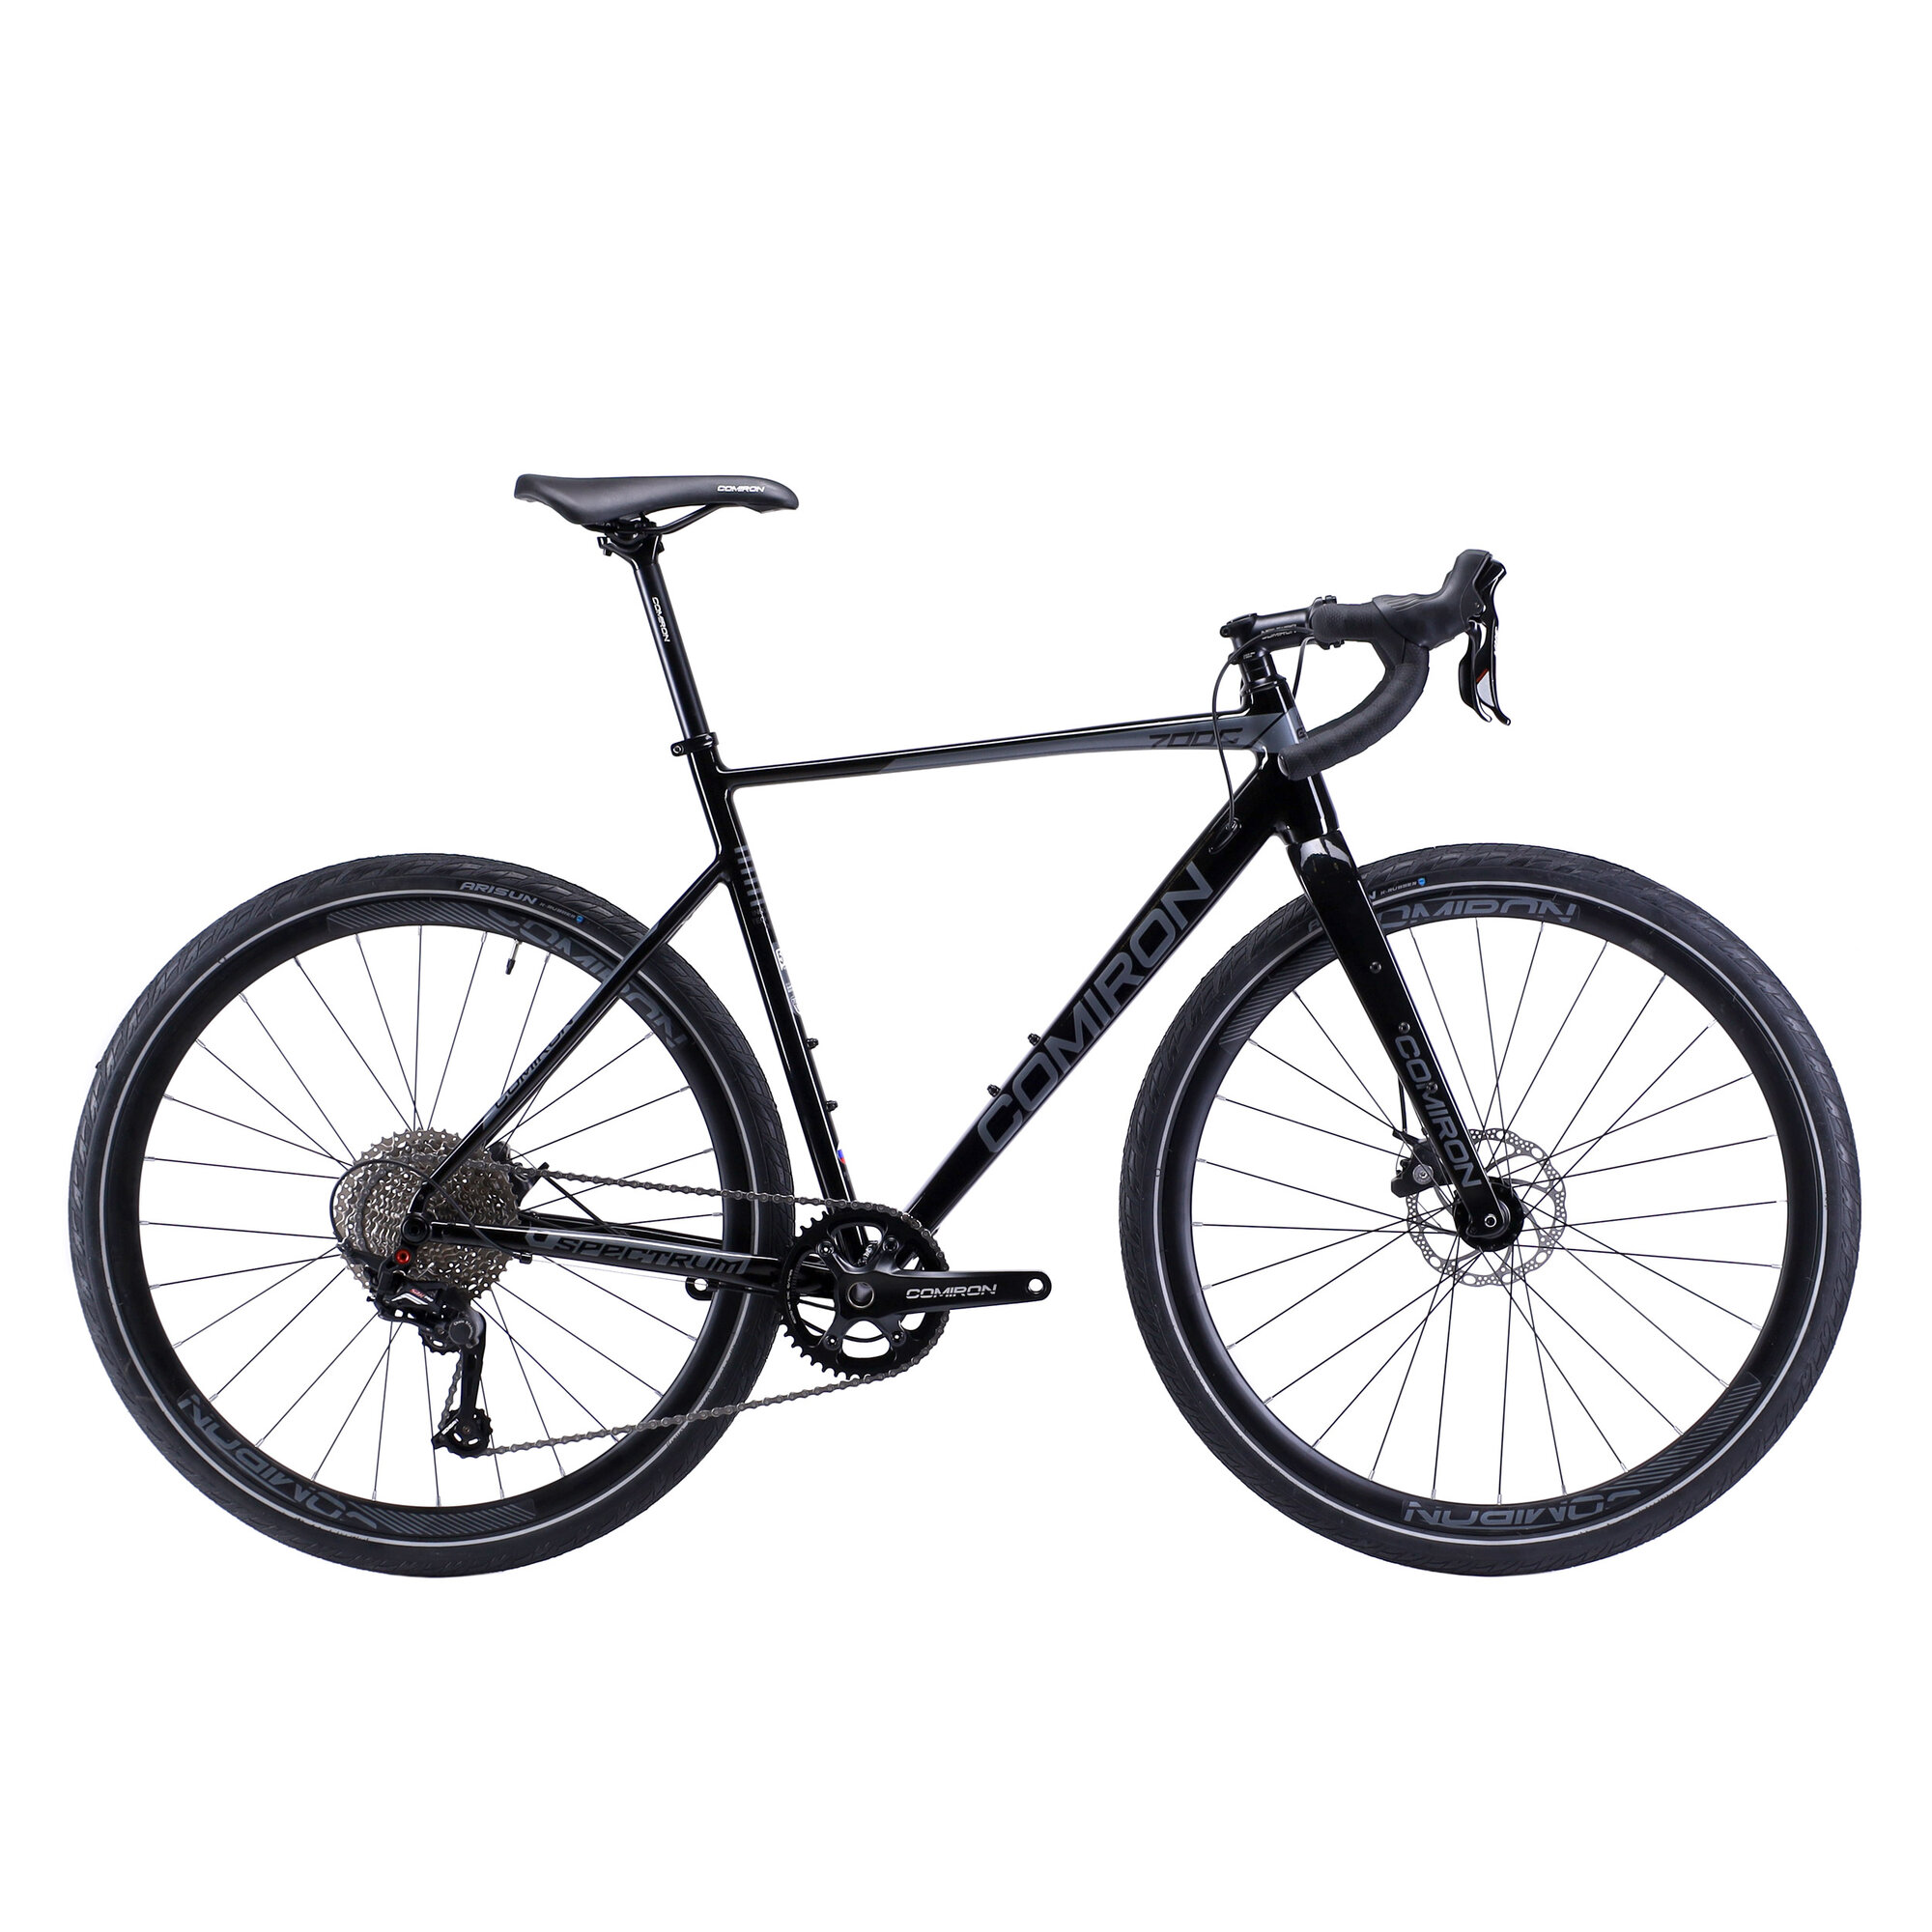 Велосипед GRAVEL COMIRON SPECTRUM I 700C-560mm, карбон. вилка, на осях, 11 скоростей. цвет: черный event horizon